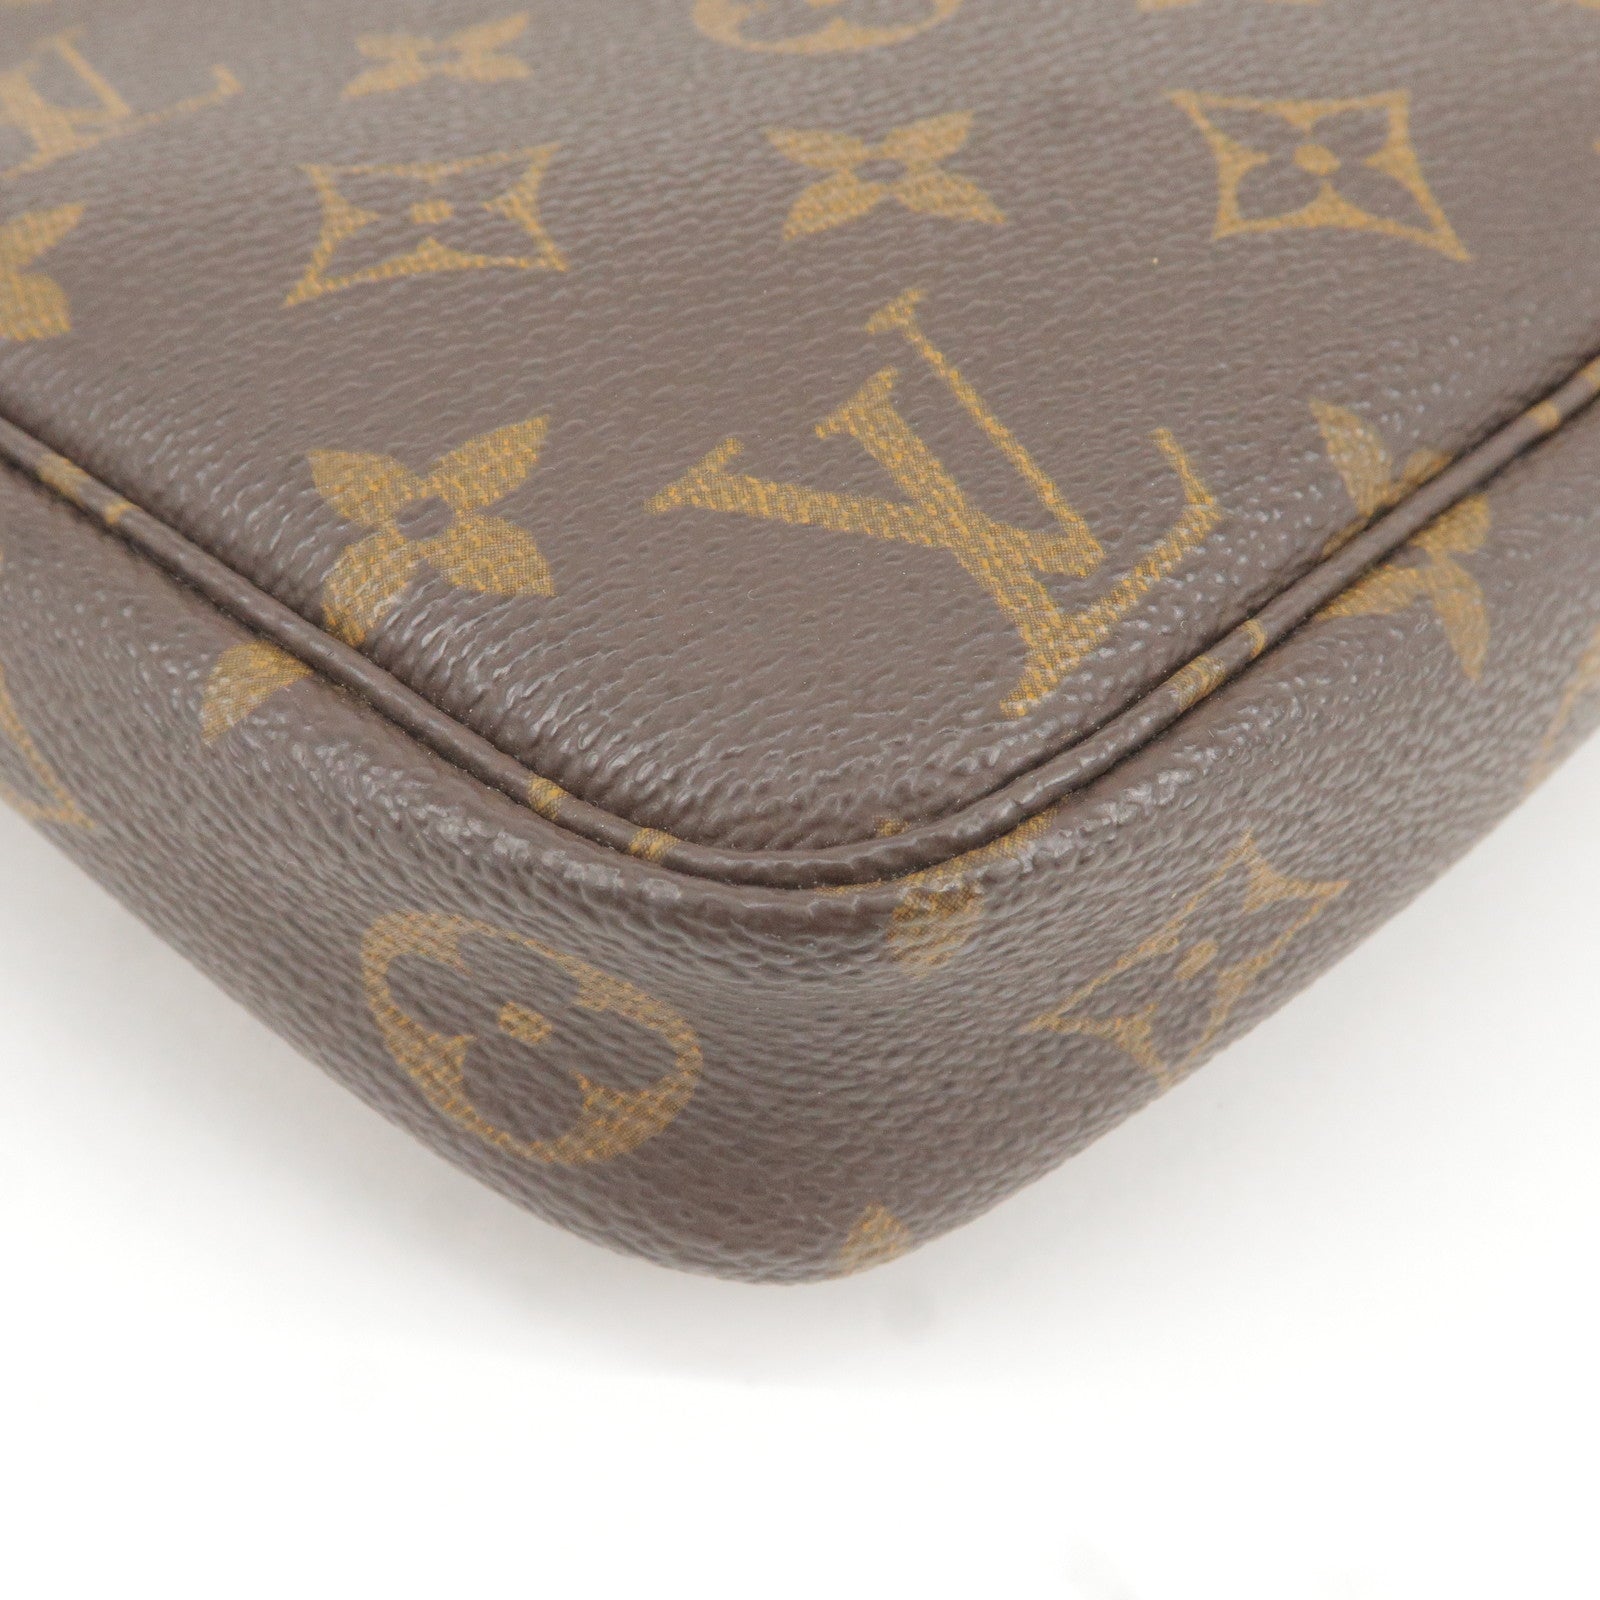 Vuitton - Bag - Hand - Pochette - M51980 – Sac de voyage Louis